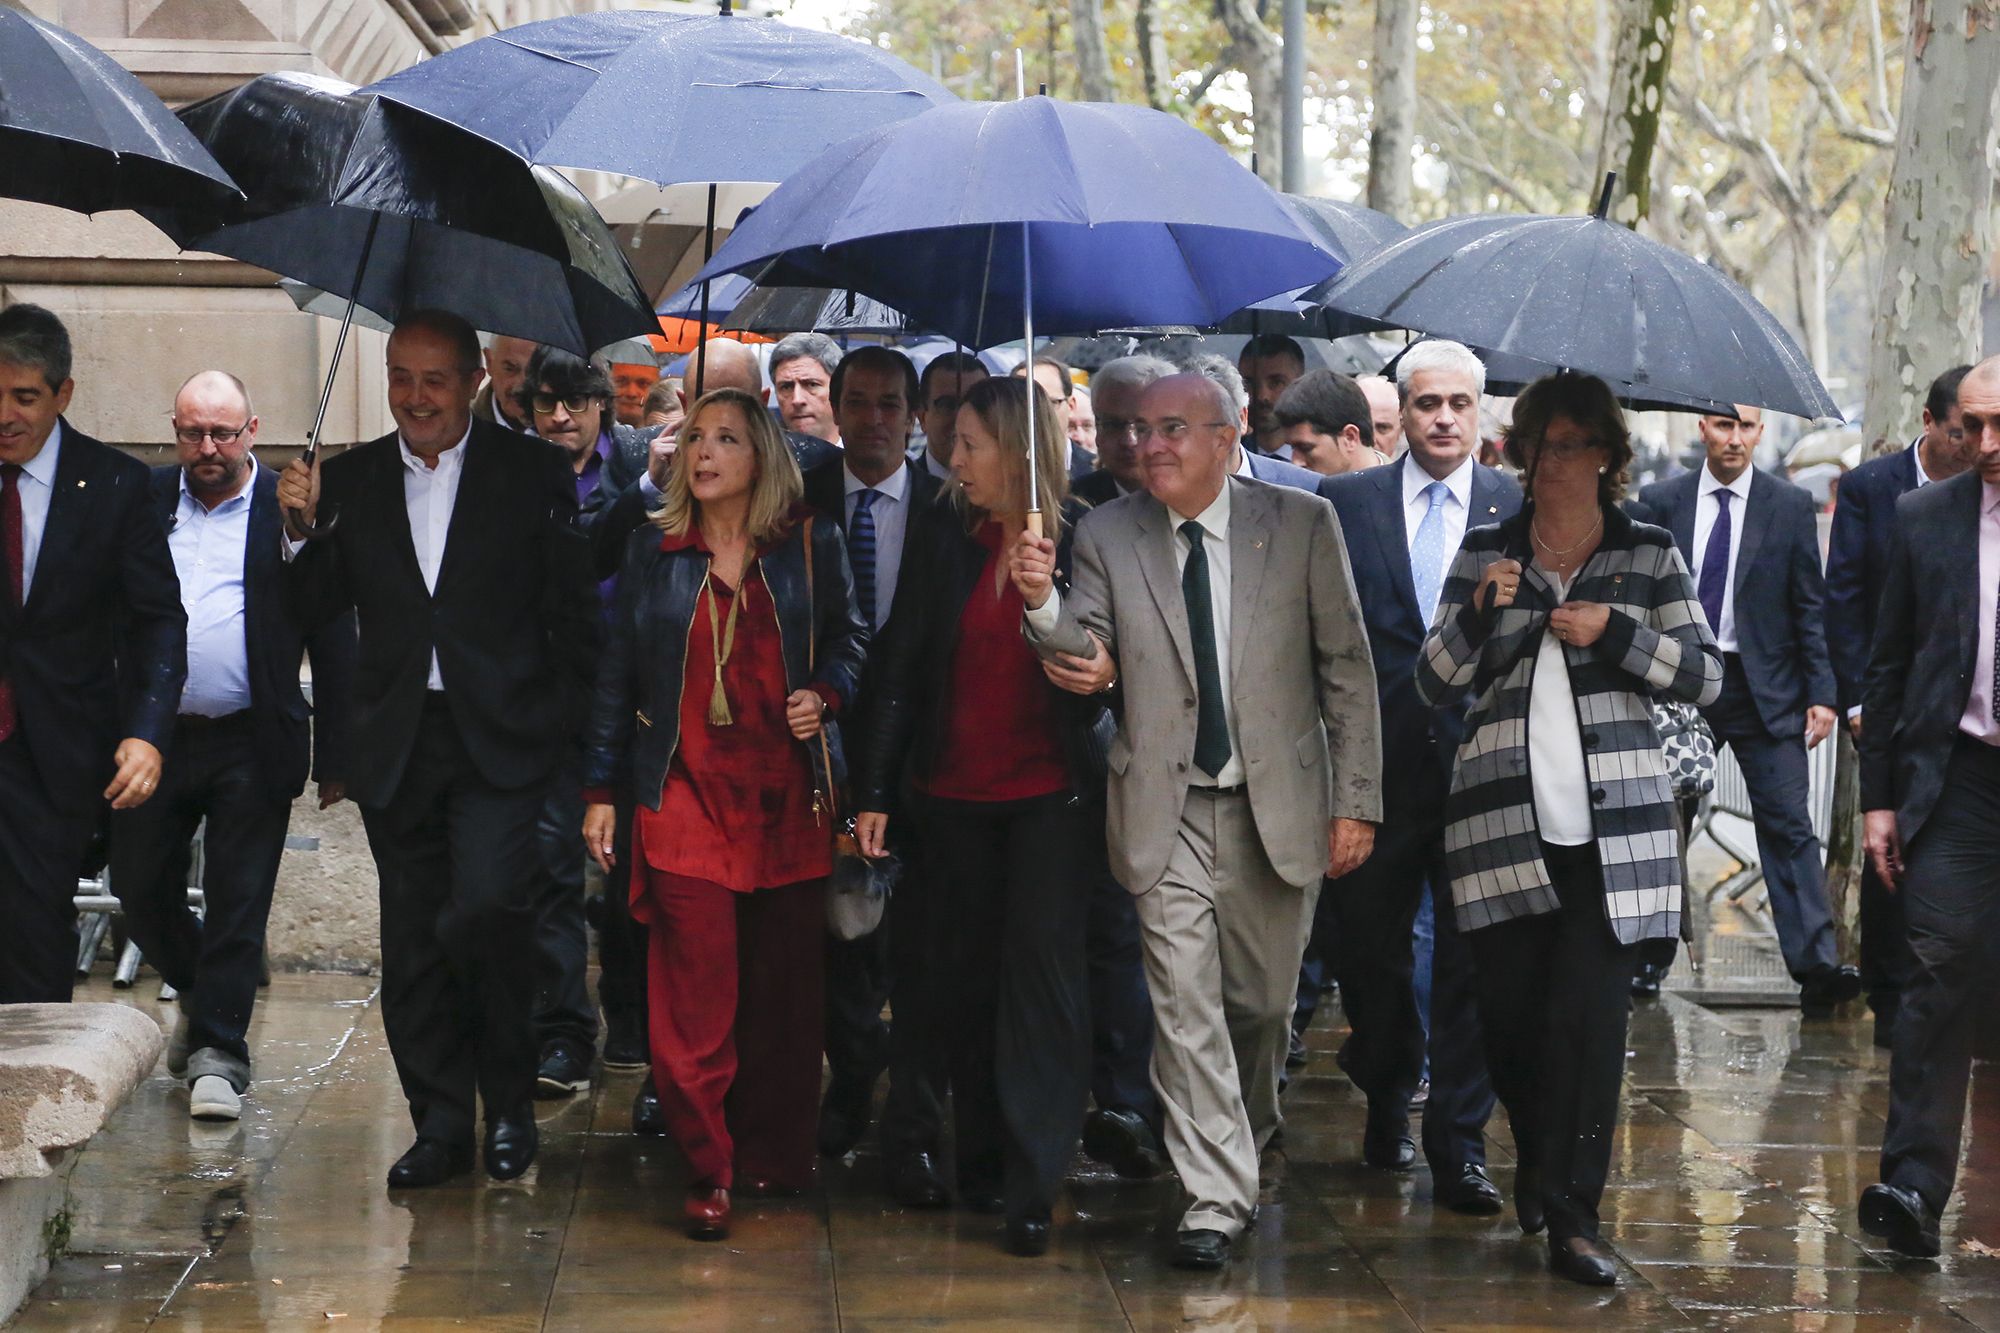 La exvicepresidenta Ortega dirigiéndose al tribunal con su Succesora, Neus Munté, y otros consejeros|consellers / CARLES BAHÍA